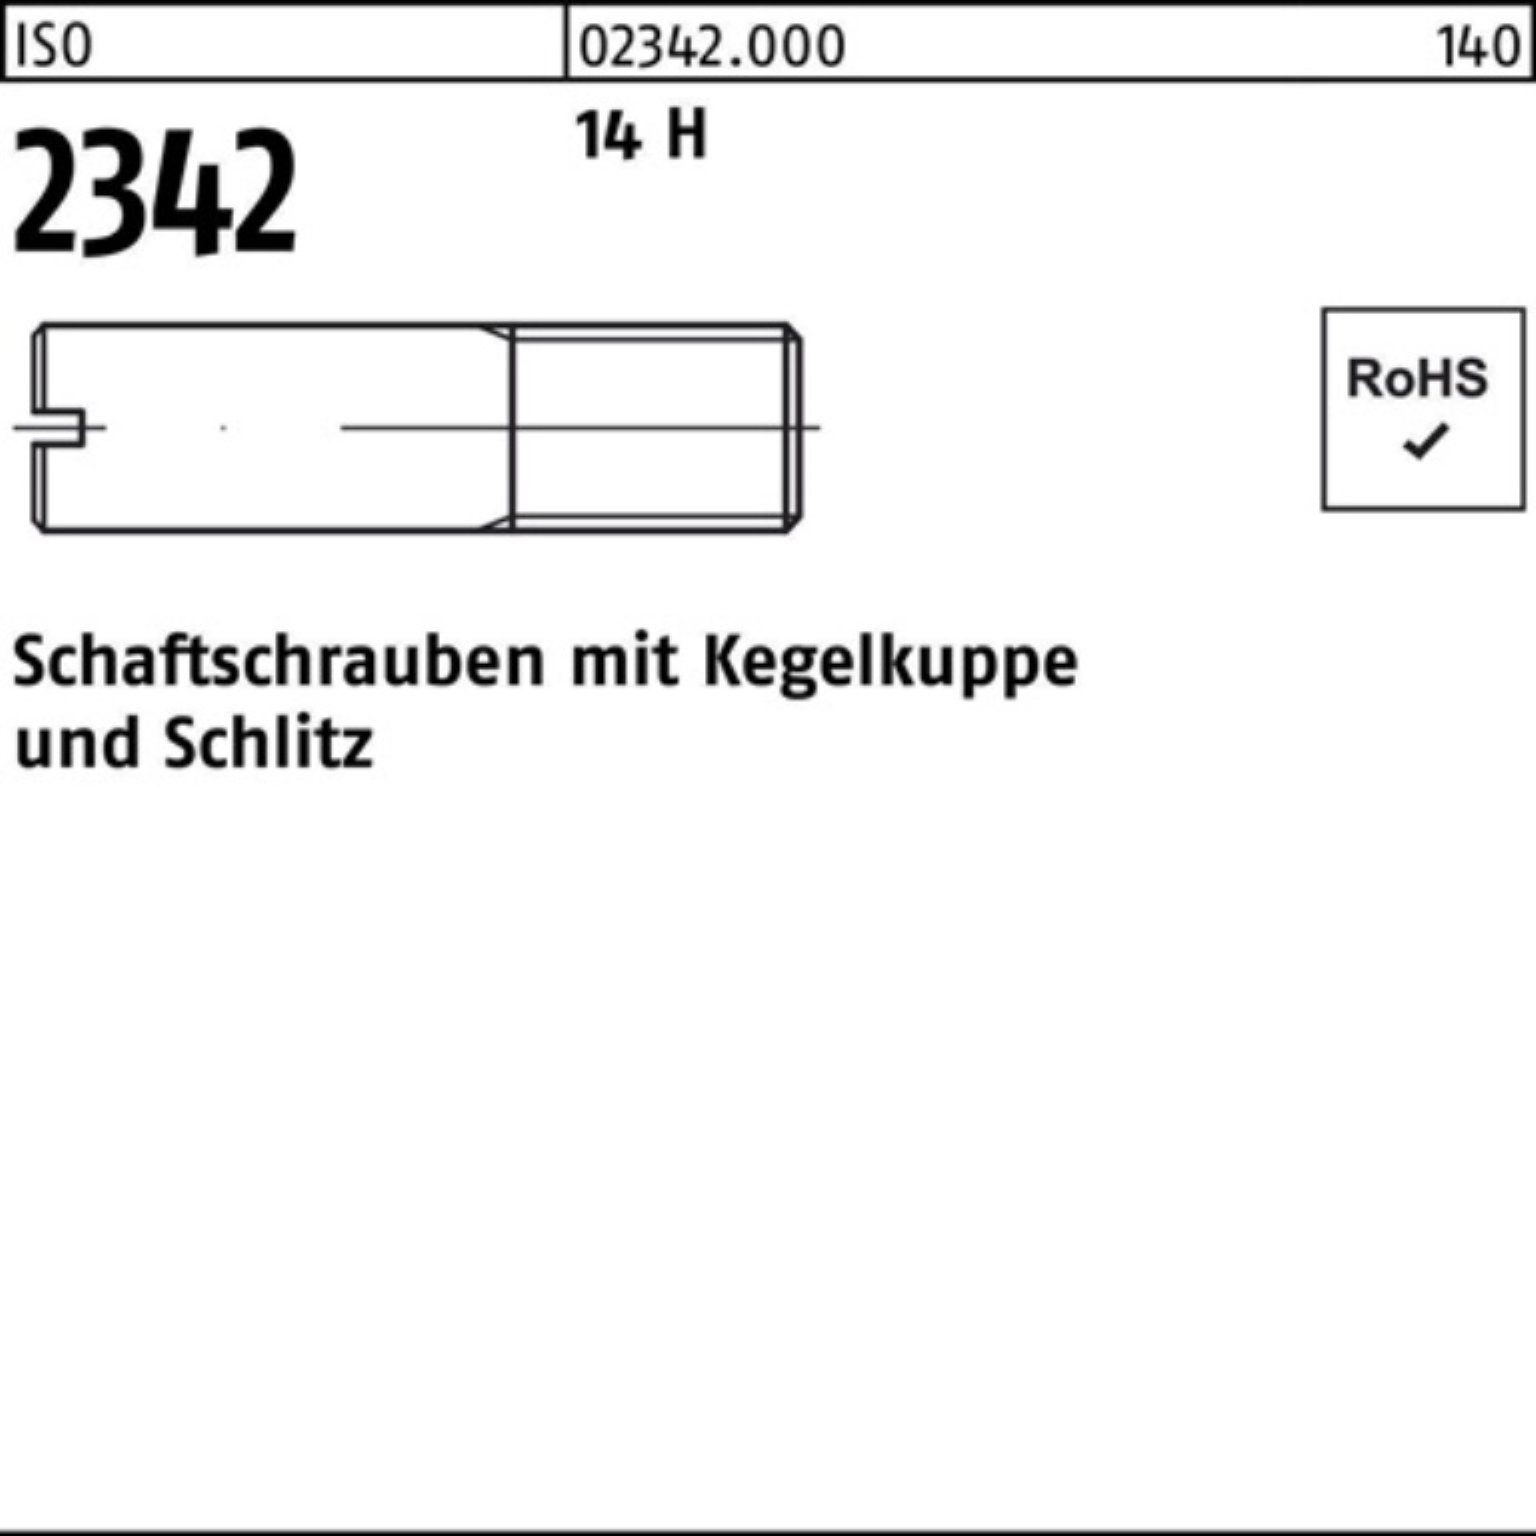 Reyher Schraube 100er Pack Schaftschraube ISO 2342 Kegelkuppe/Schlitz M5x 16 14 H 100